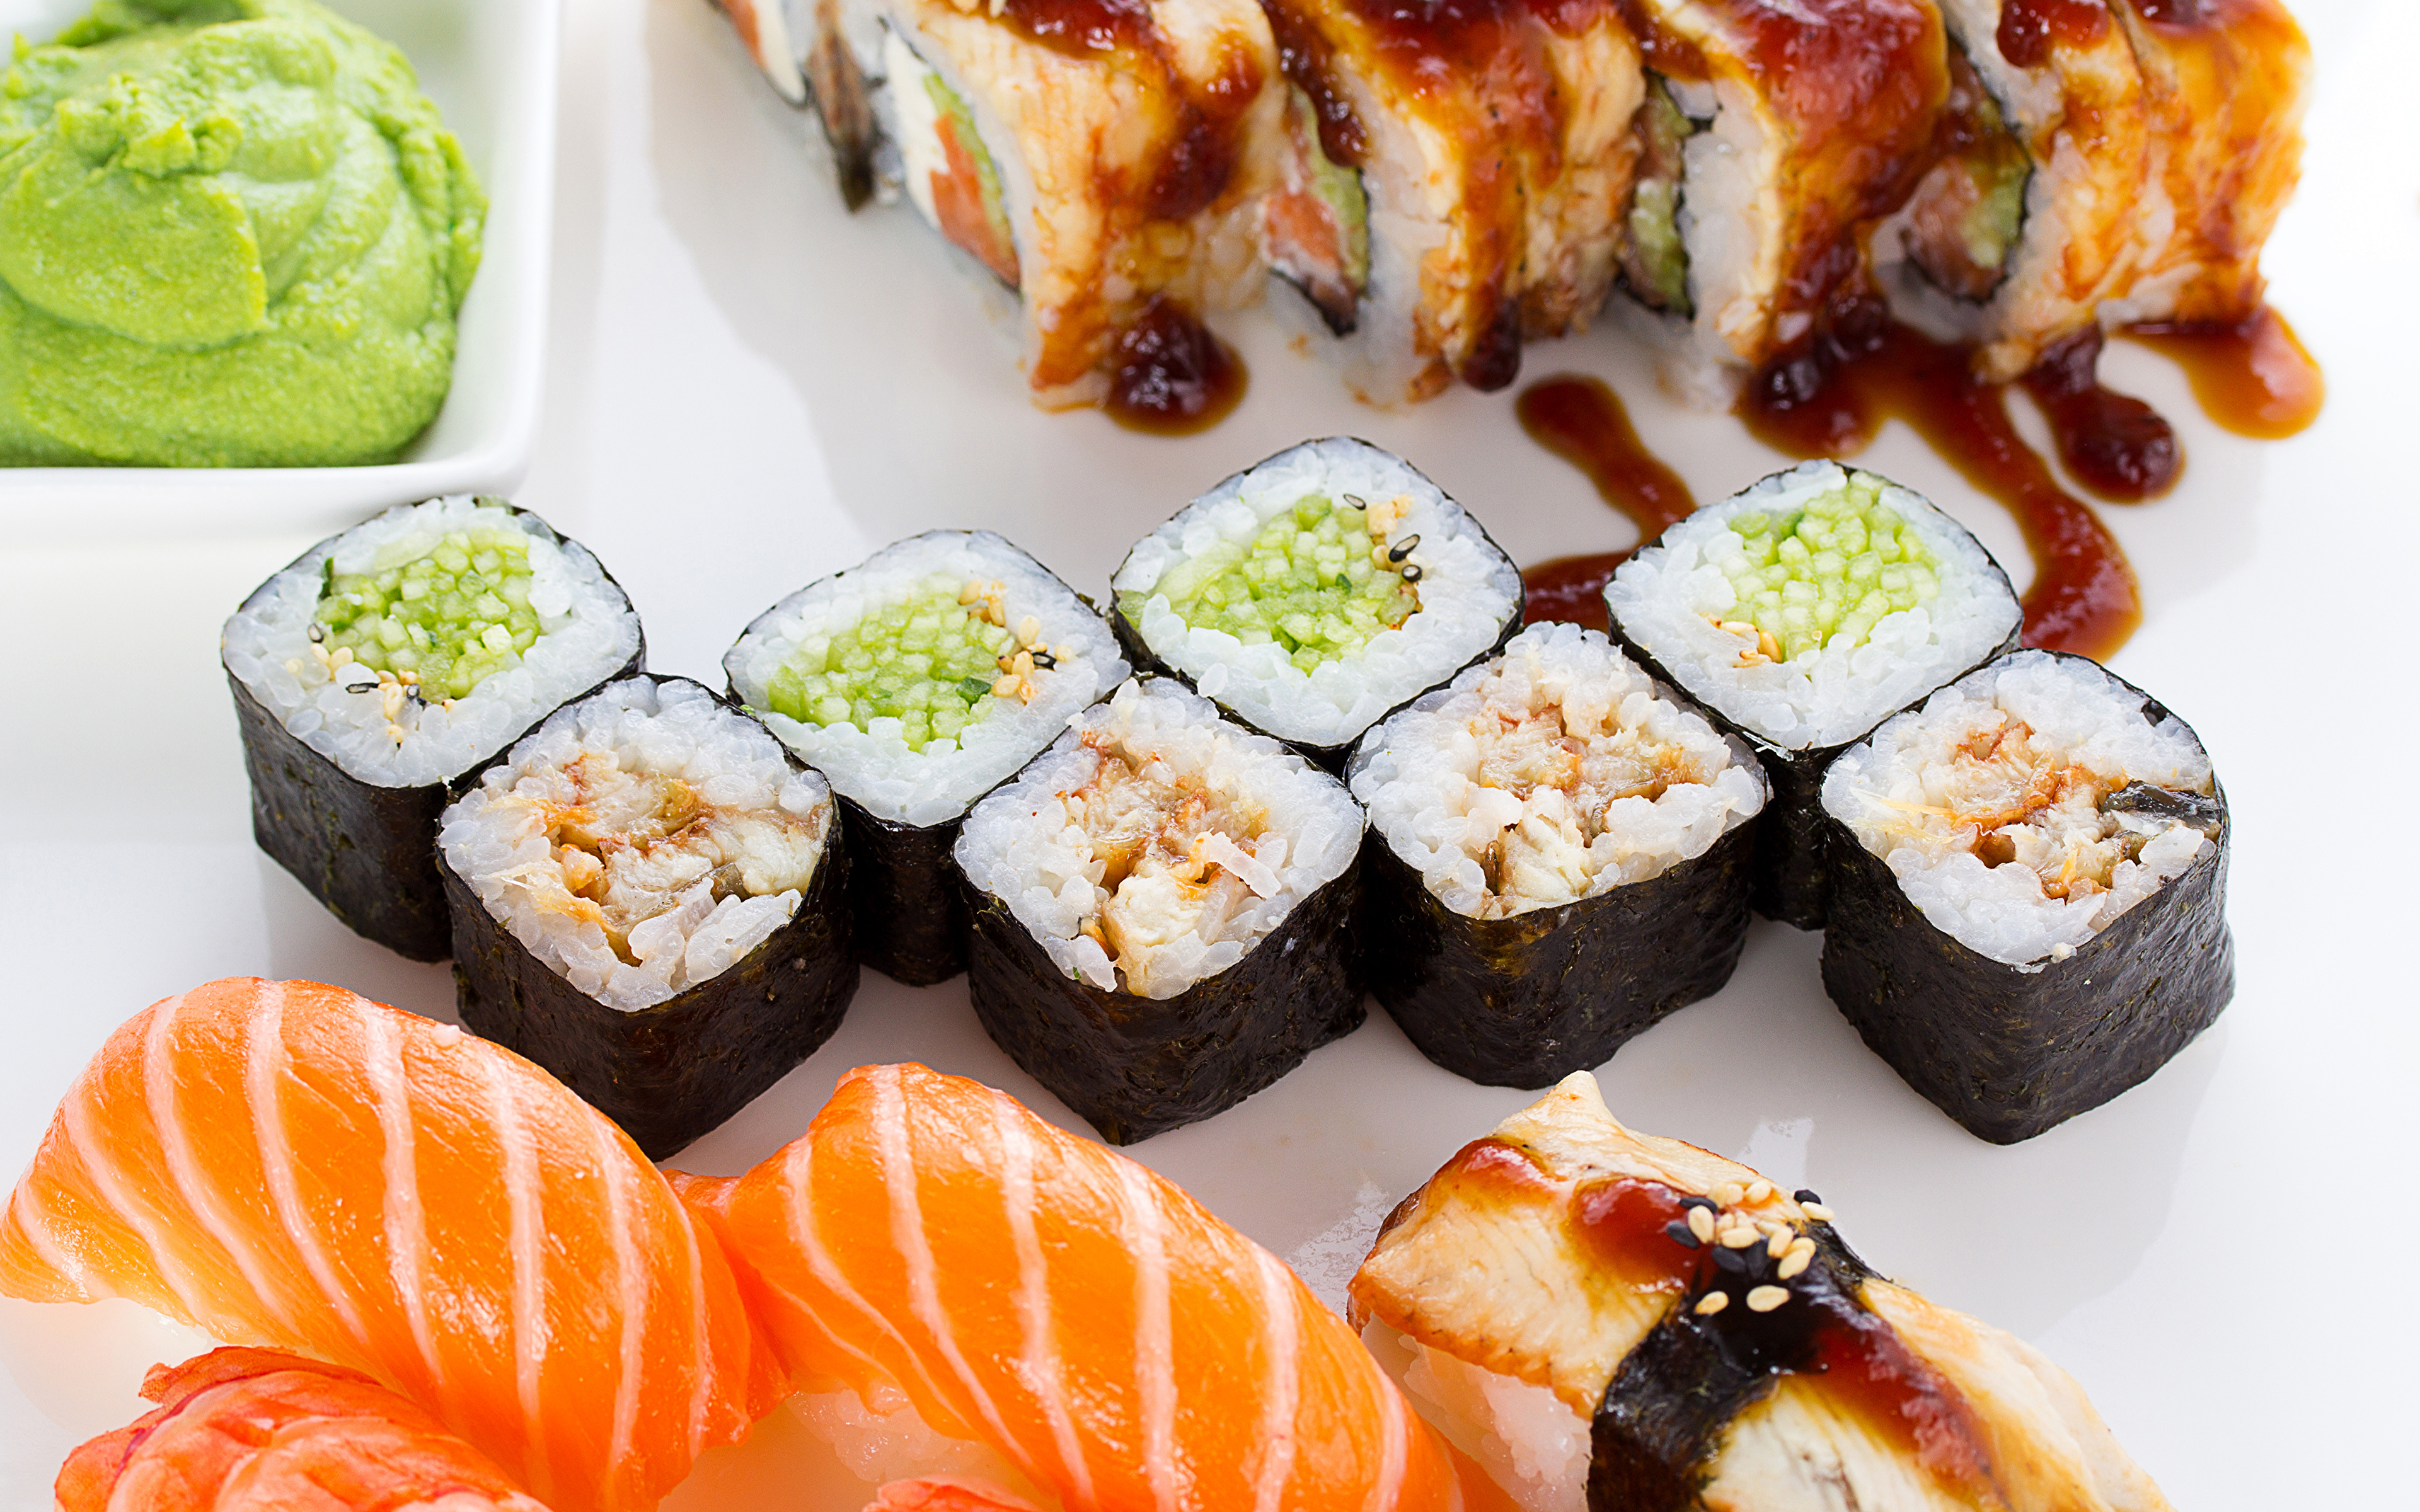 Tapeta Jedzenie ryby Sushi Ryż Owoce morza 3840x2400 żywność Ryba - Jedzenie